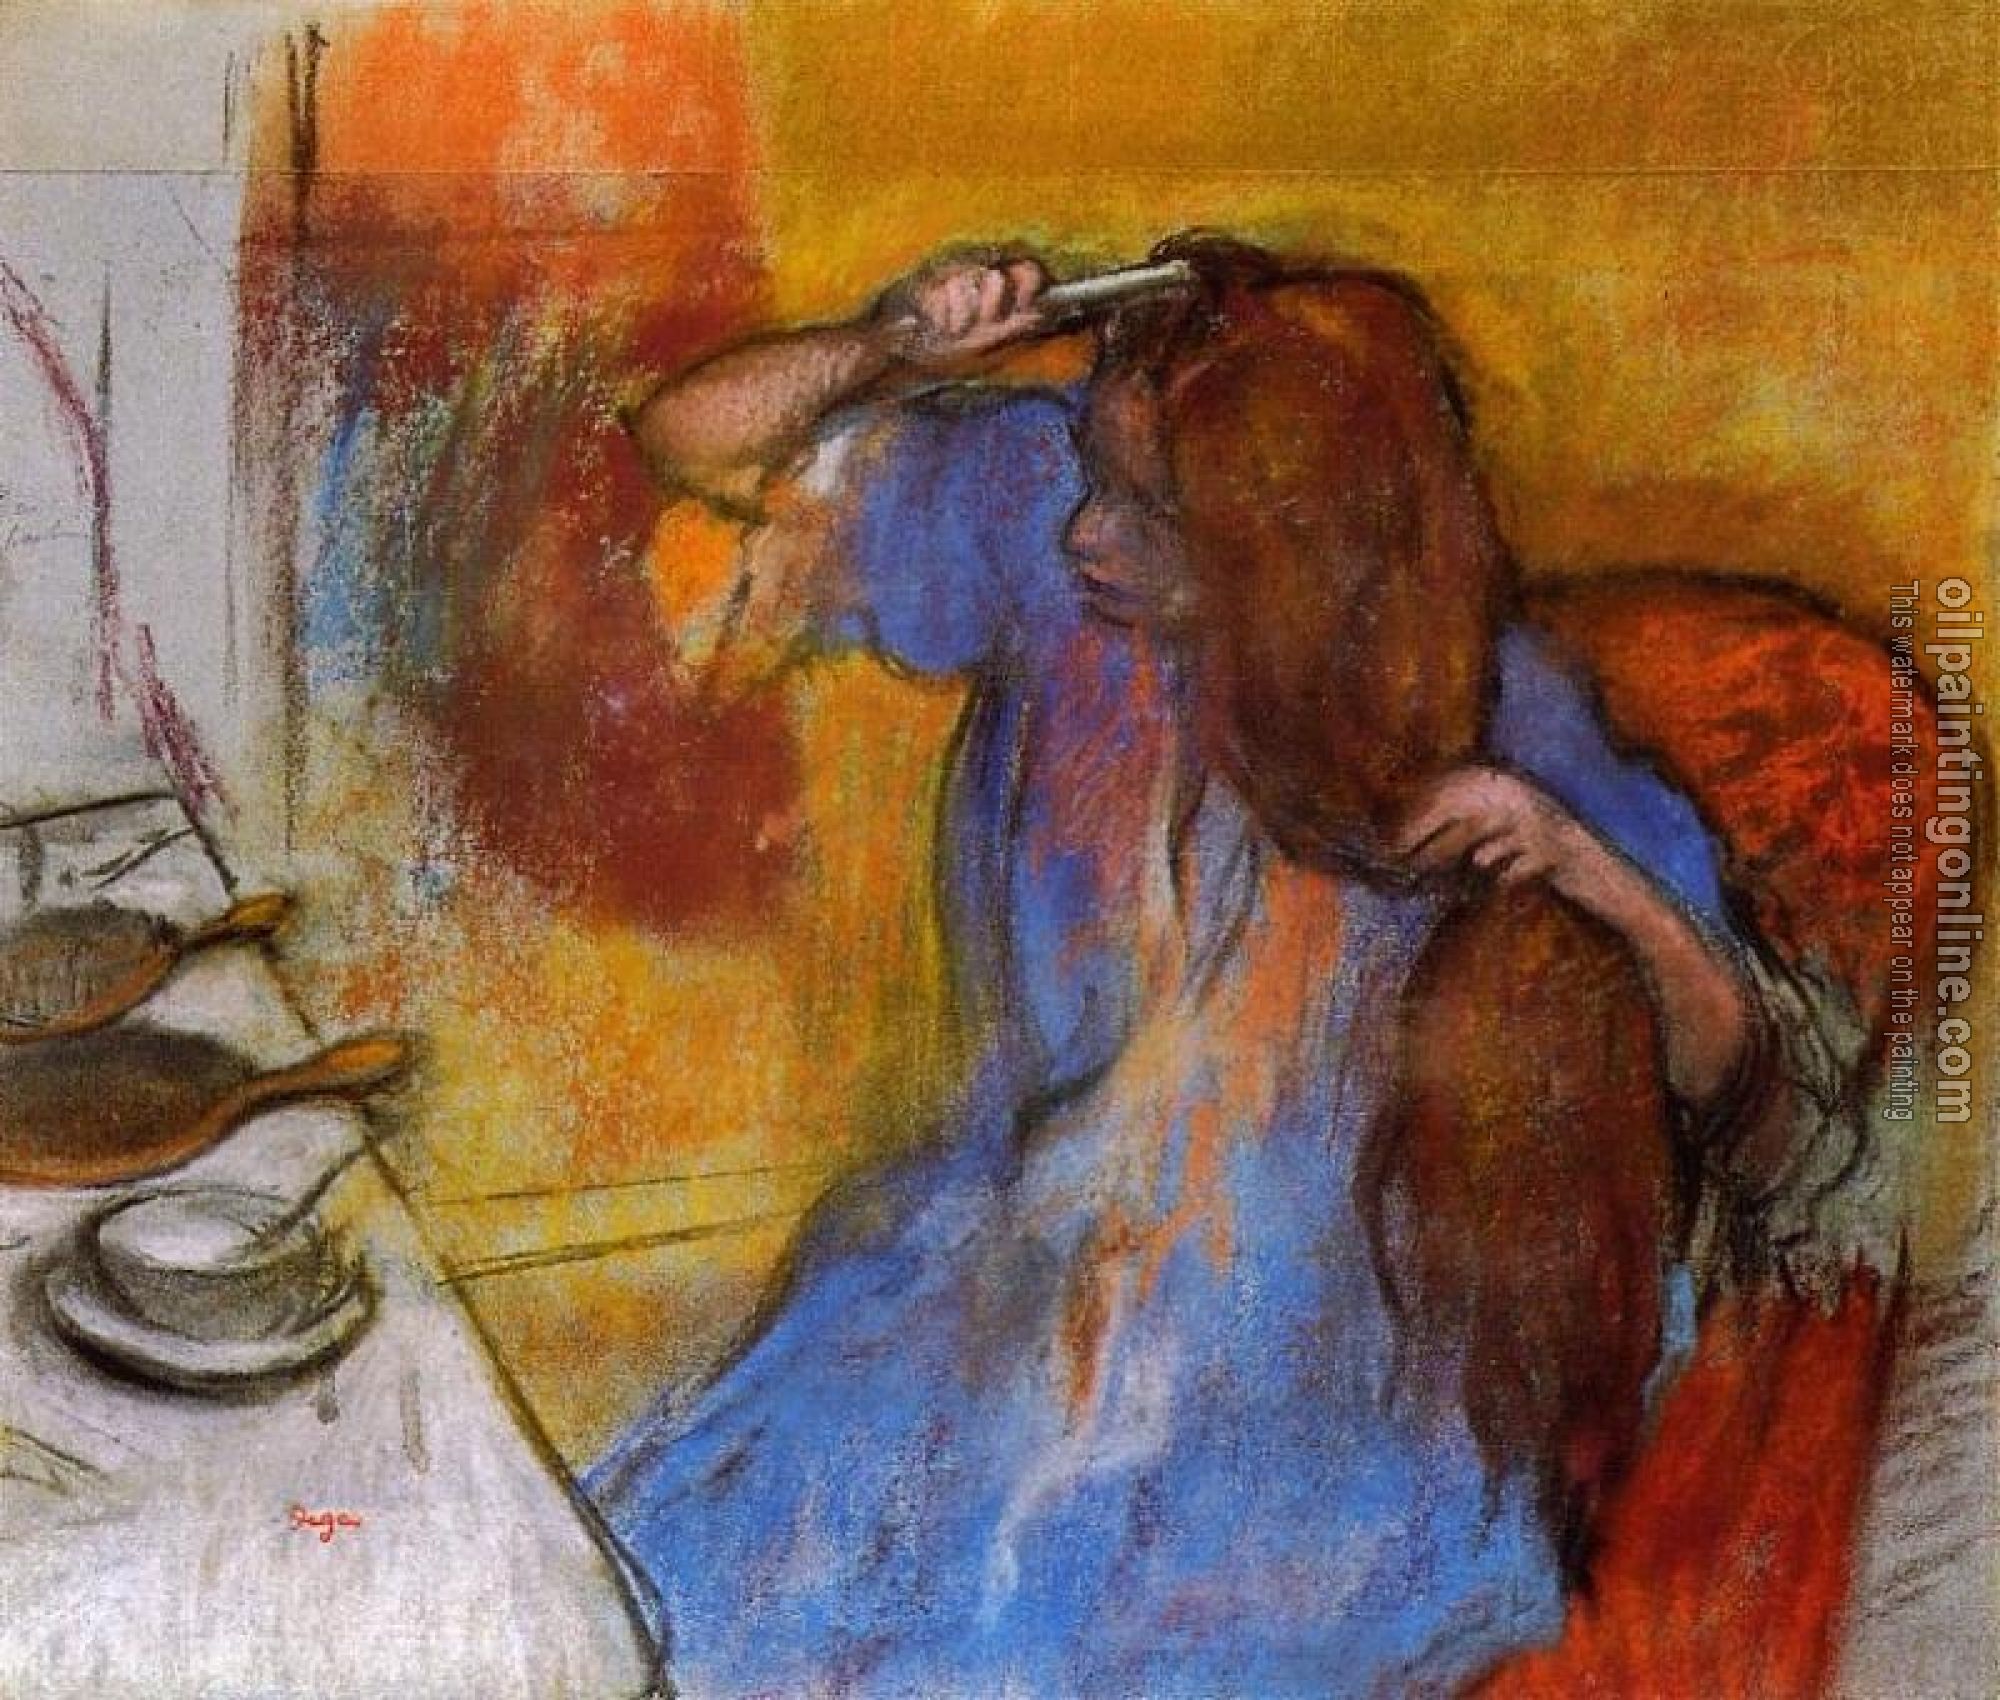 Degas, Edgar - Woman Brushing Her Hair